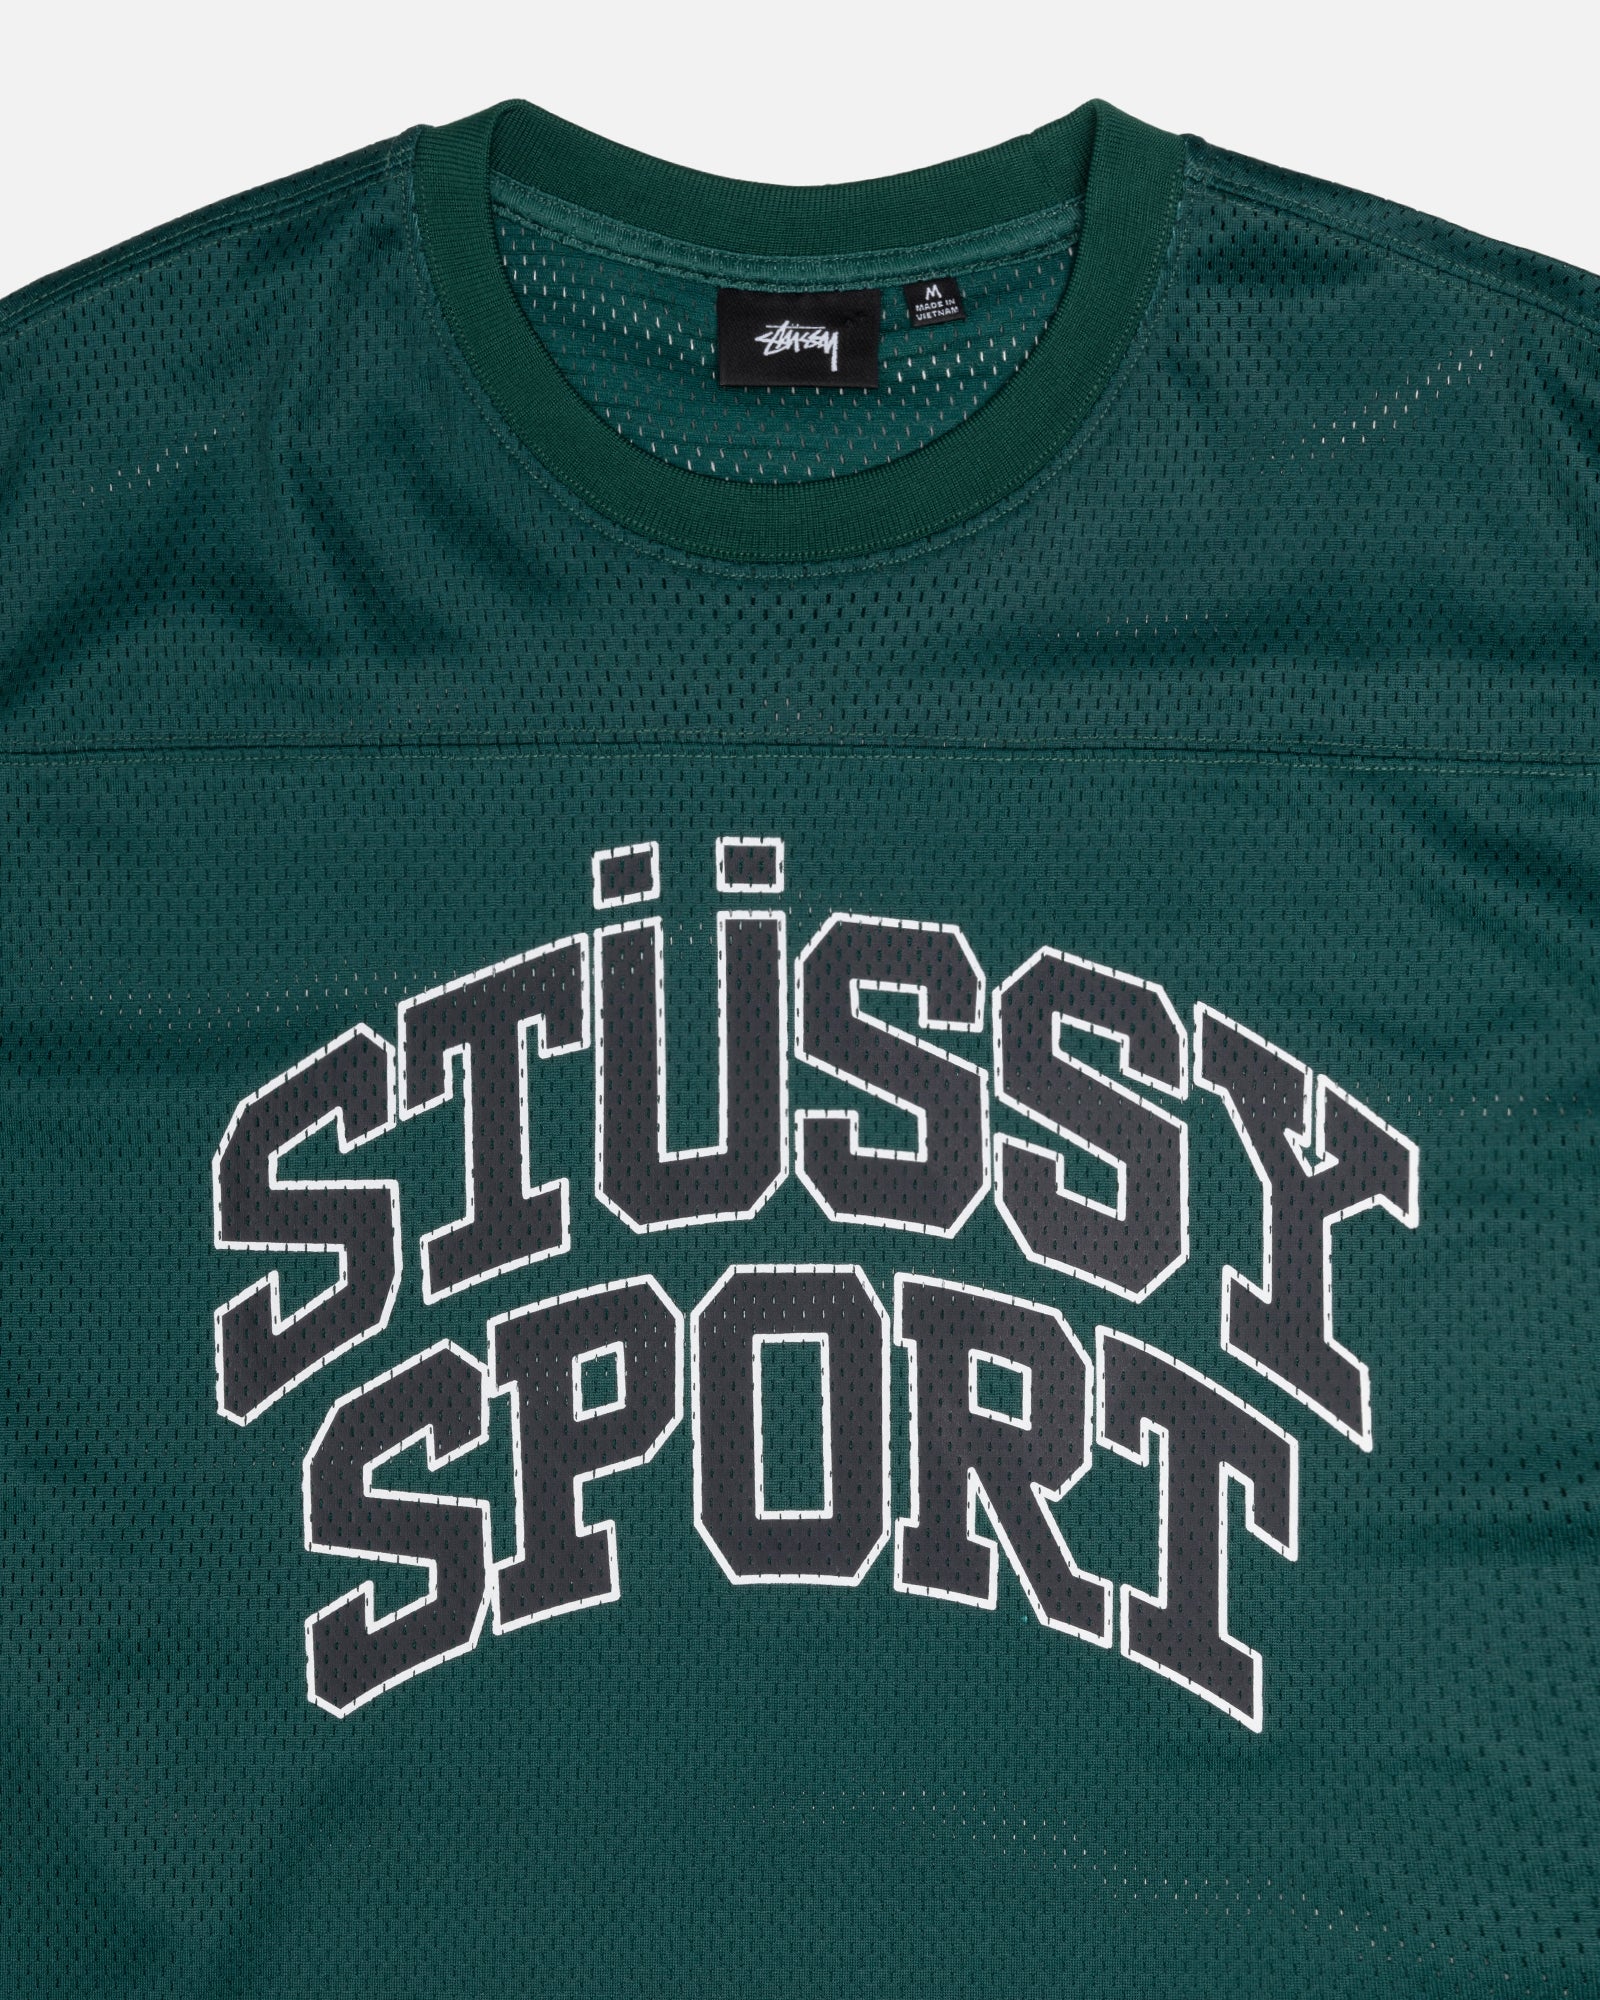 特価格安 stussy mesh football jersey M 82rp1-m11949783925 hotelpuertogaviota.com